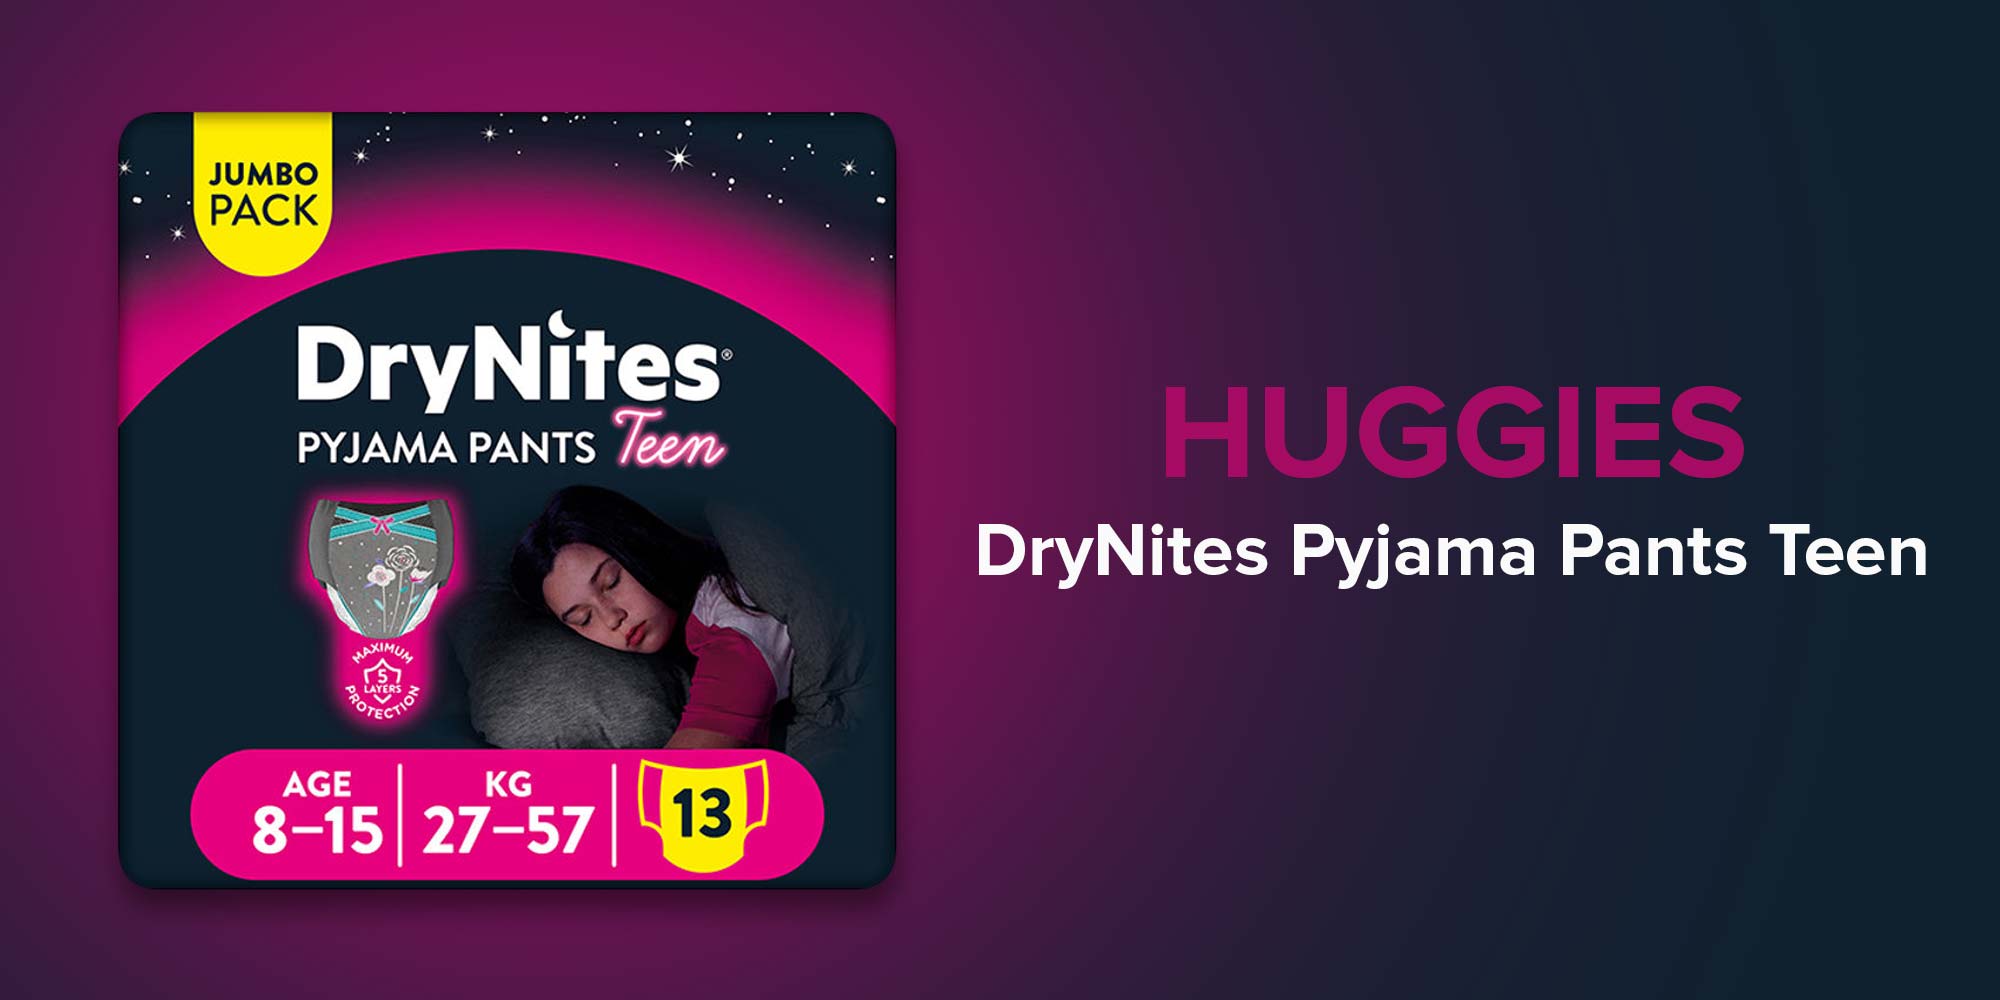 Huggies DryNites Pyjama Pants, 8-15 years, Bed Wetting Diaper, Girls, 27-57  kg, Value Pack, 13 Pants UAE